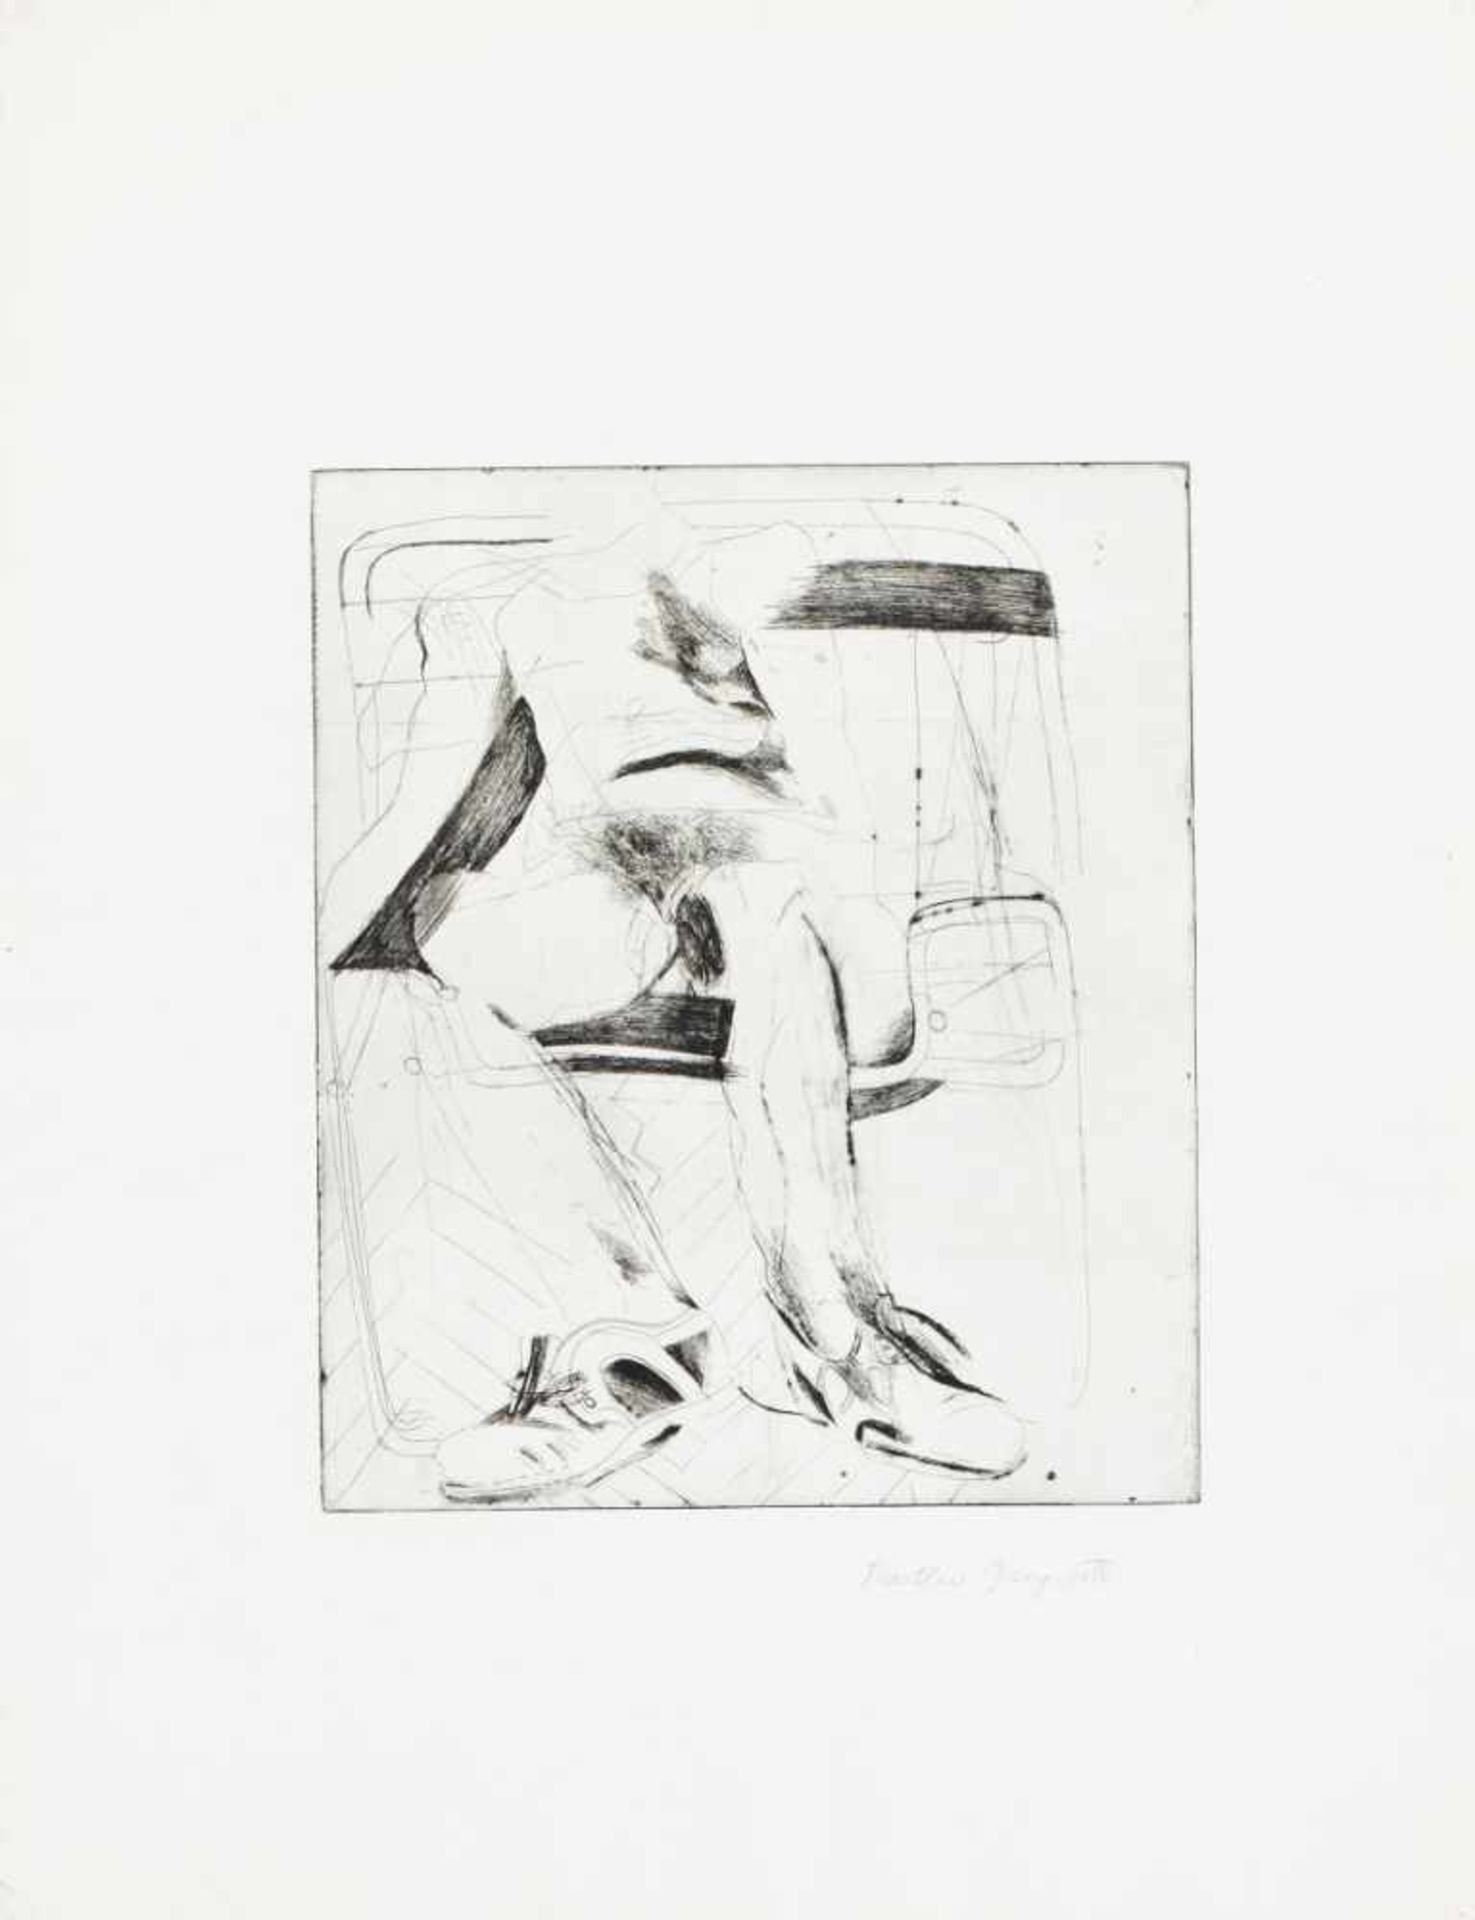 MARTHA JUNGWIRTH(1940 WIEN)DER SITZENDE, 1971Radierung auf Bütten, Plattengröße: 34 x 29